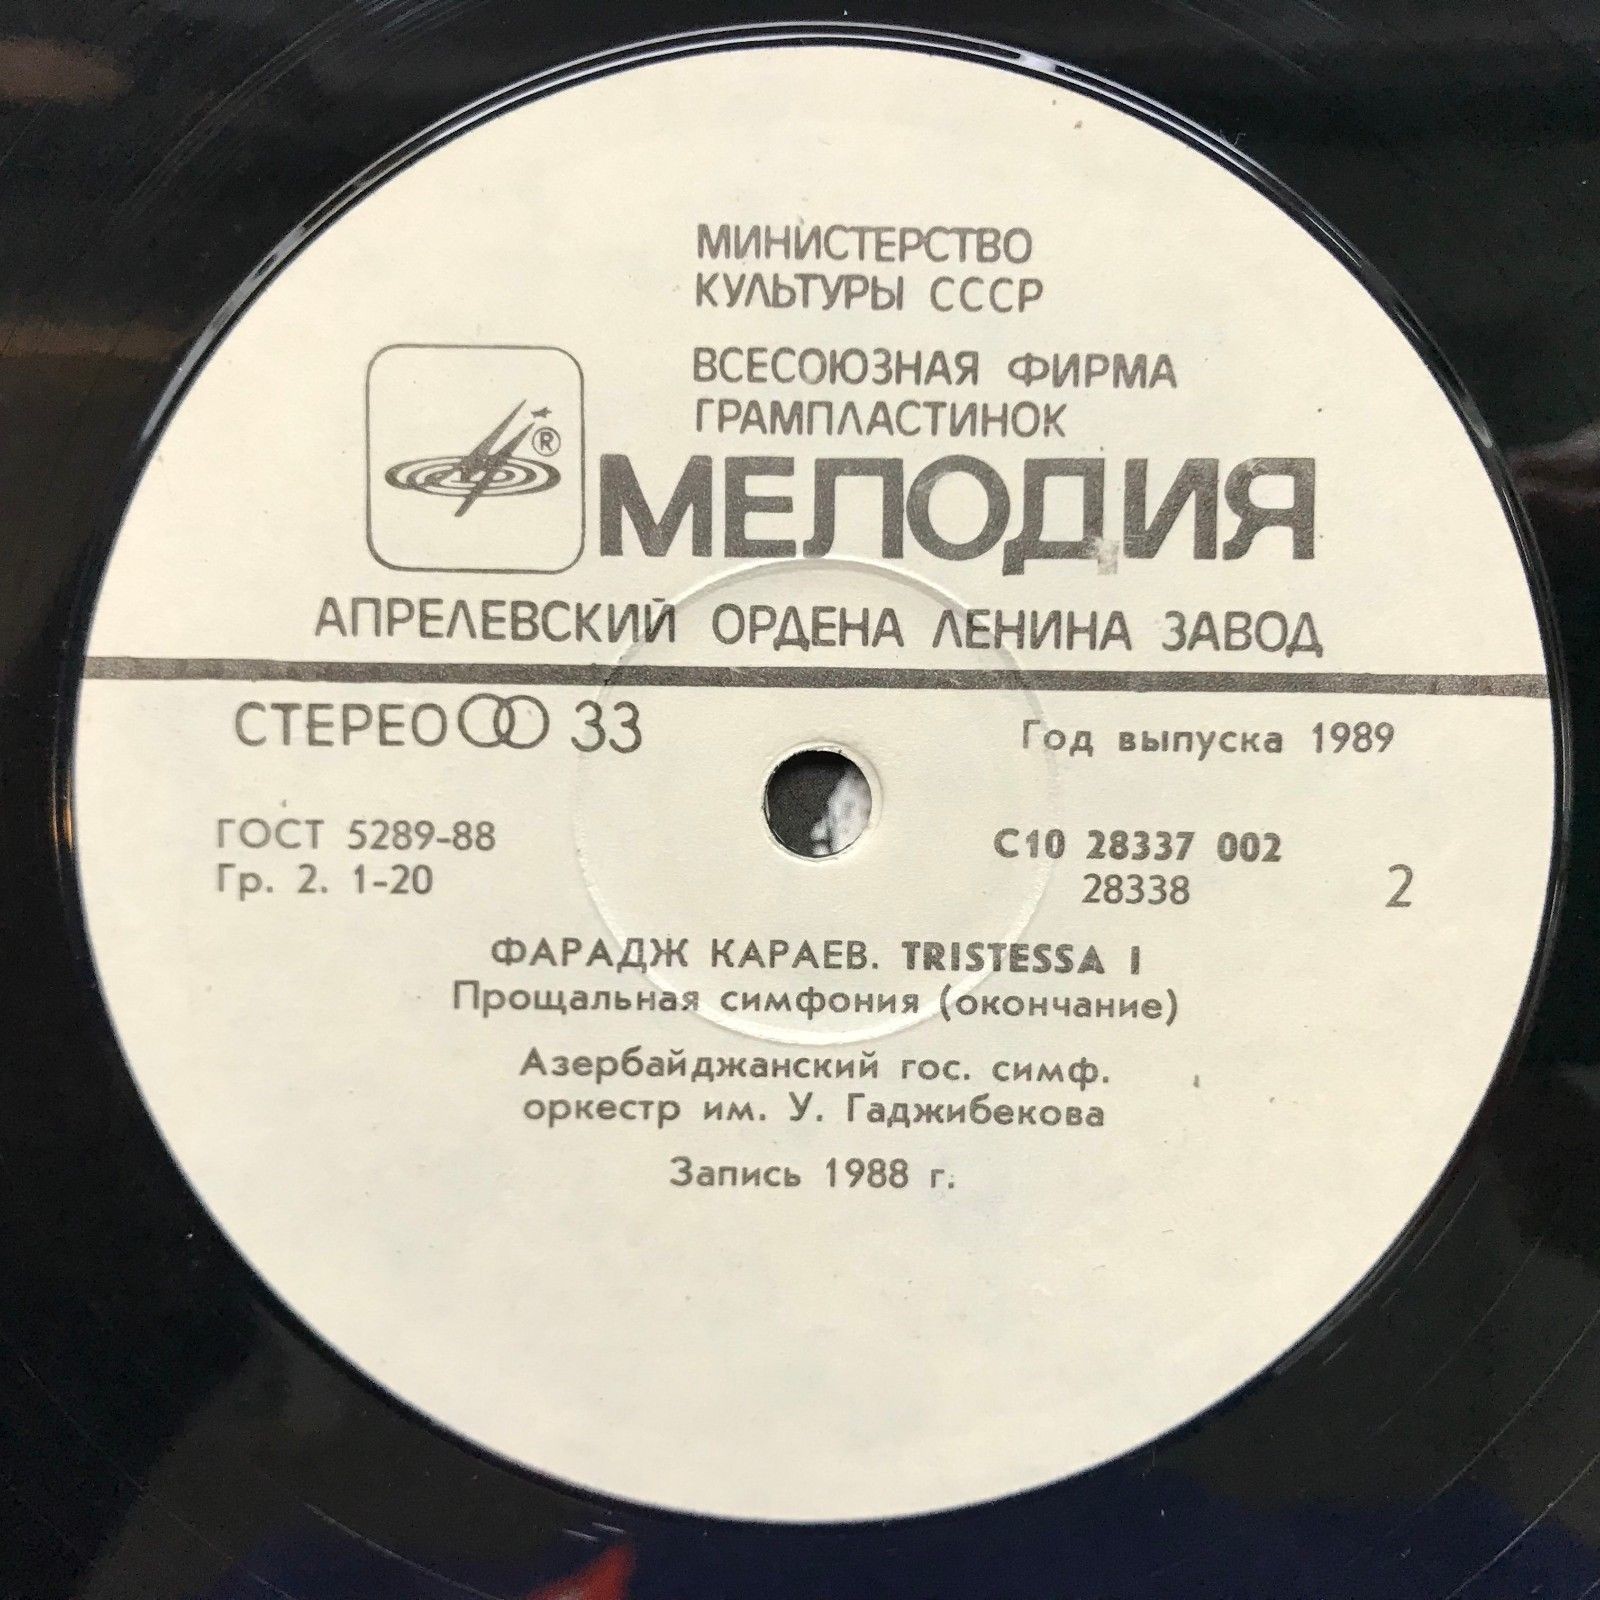 Фарадж КАРАЕВ (1943): "Tristessa I" (Прощальная симфония).